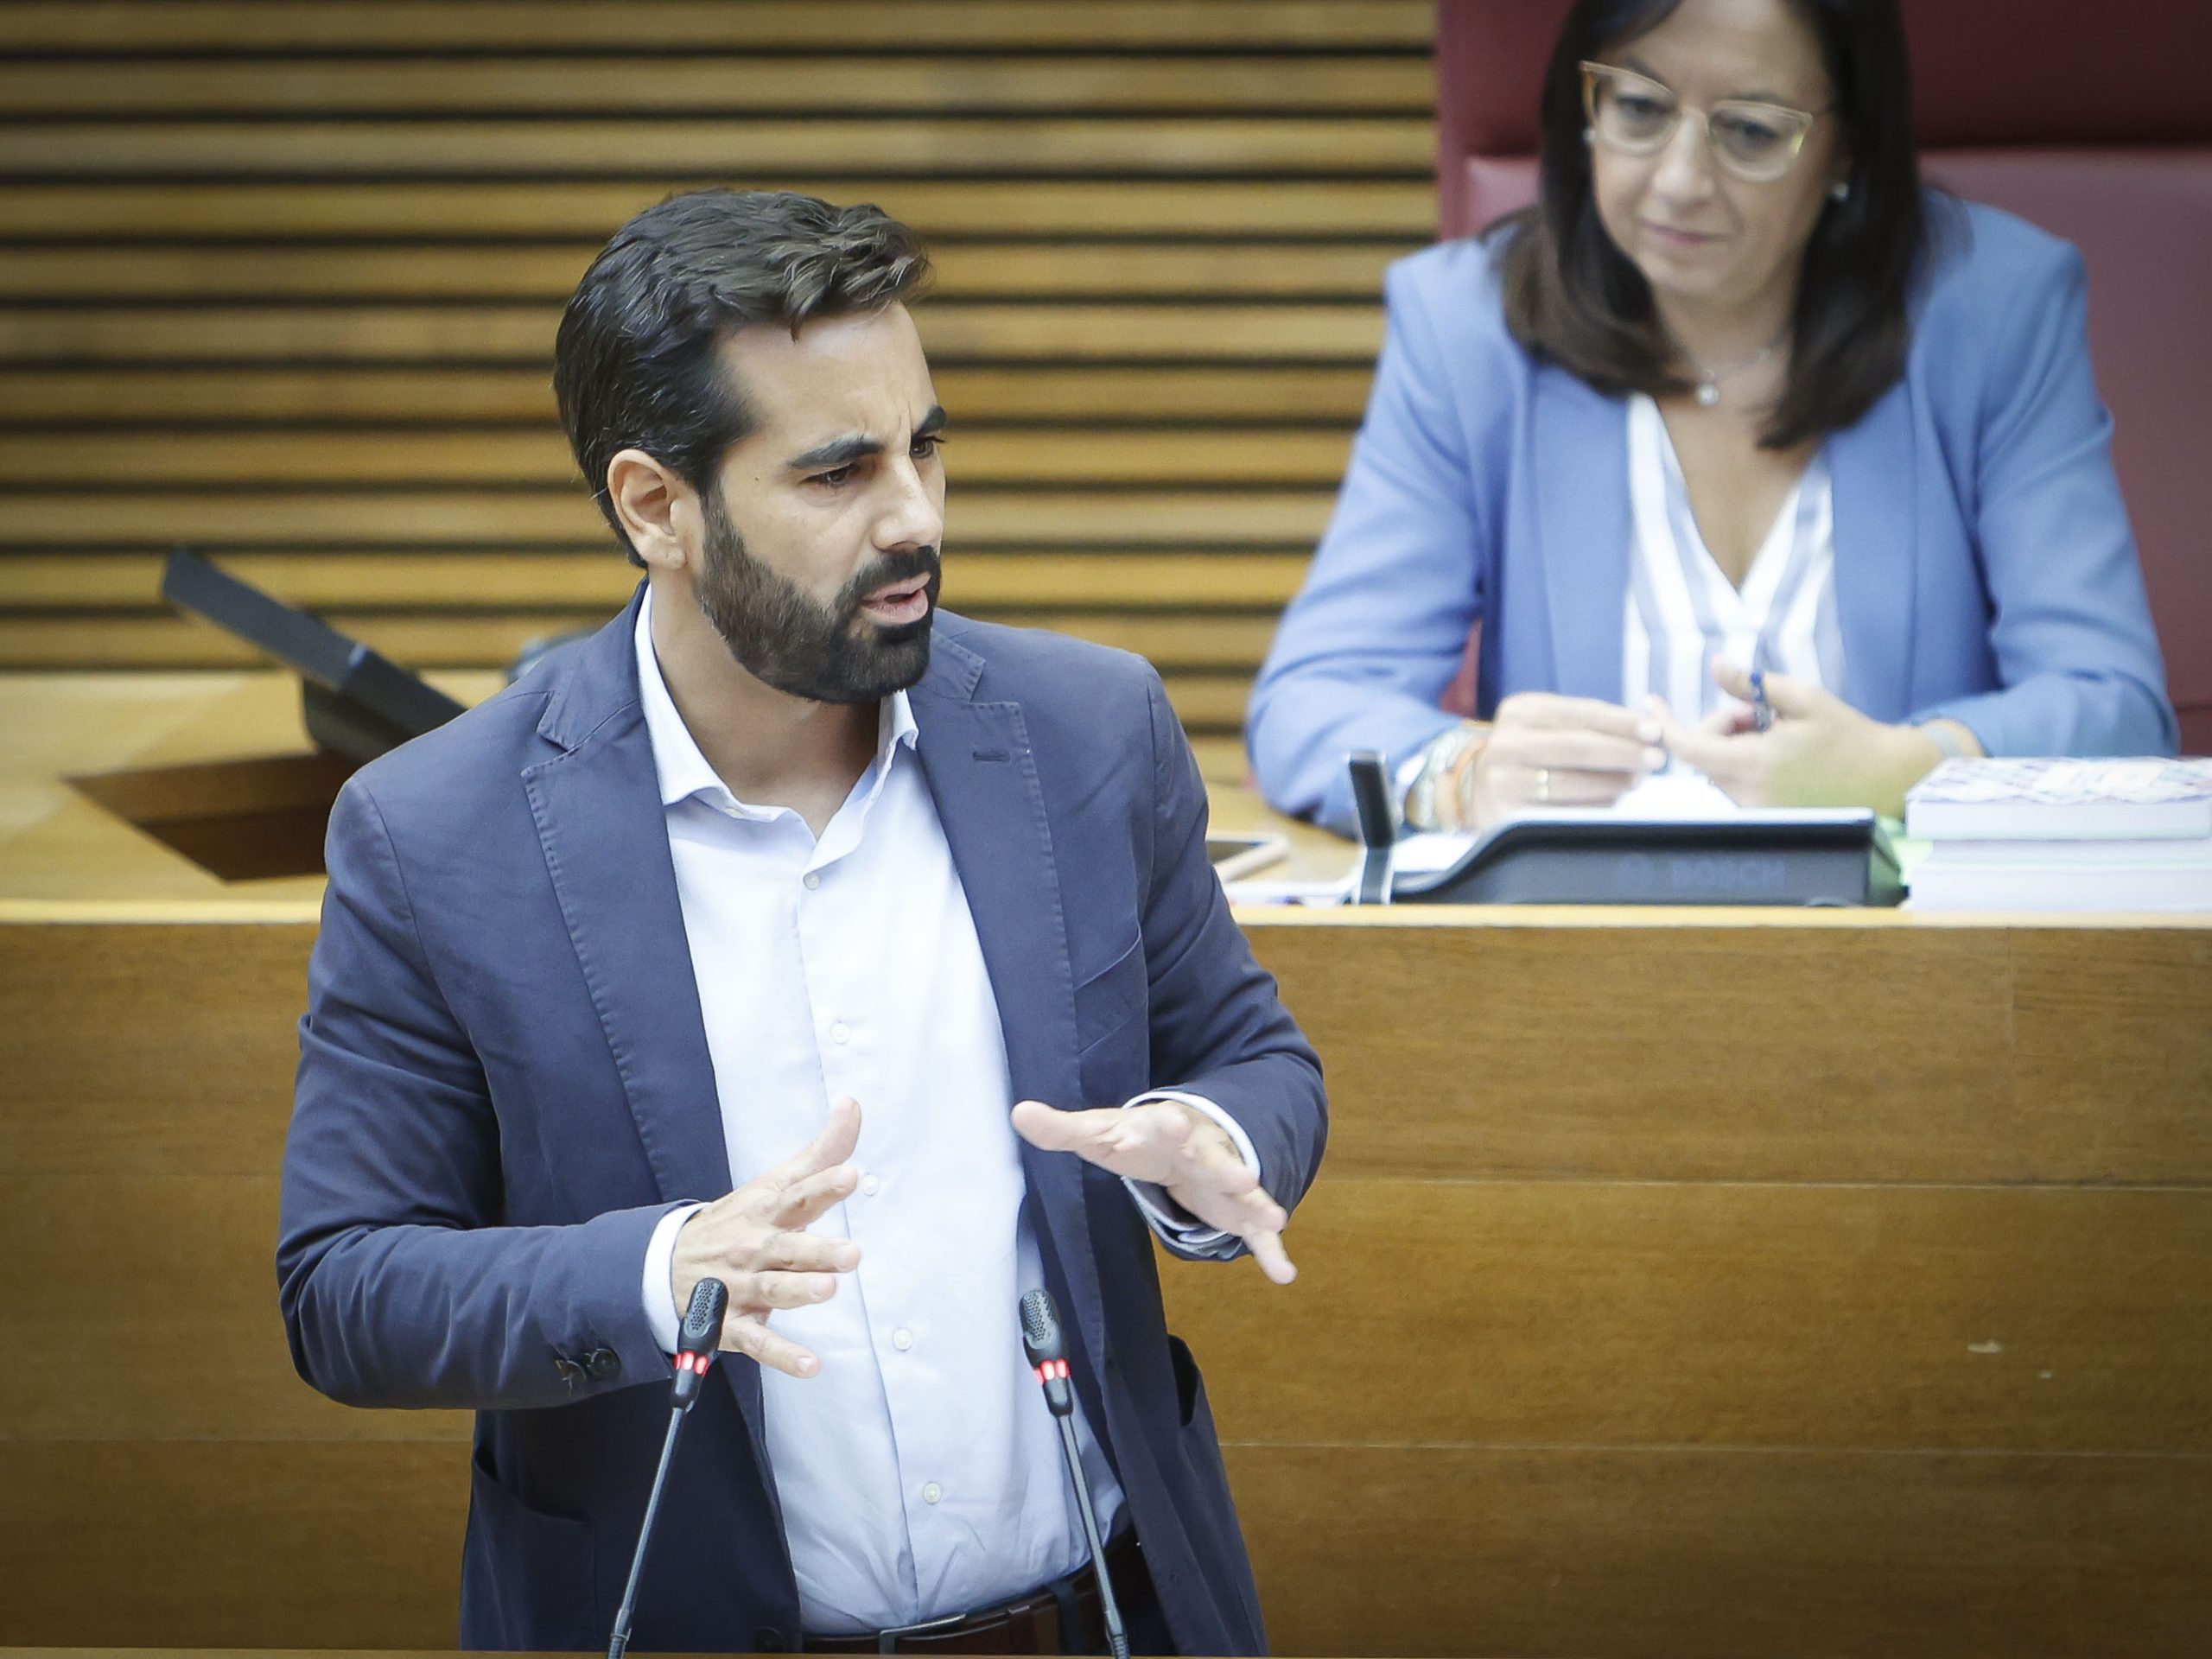 En este momento estás viendo Muñoz: “En la Comunitat Valenciana estamos viviendo el revival del zaplanismo, que hoy se enfrenta a 19 años de cárcel por presuntas mordidas de más de 20 millones de euros”